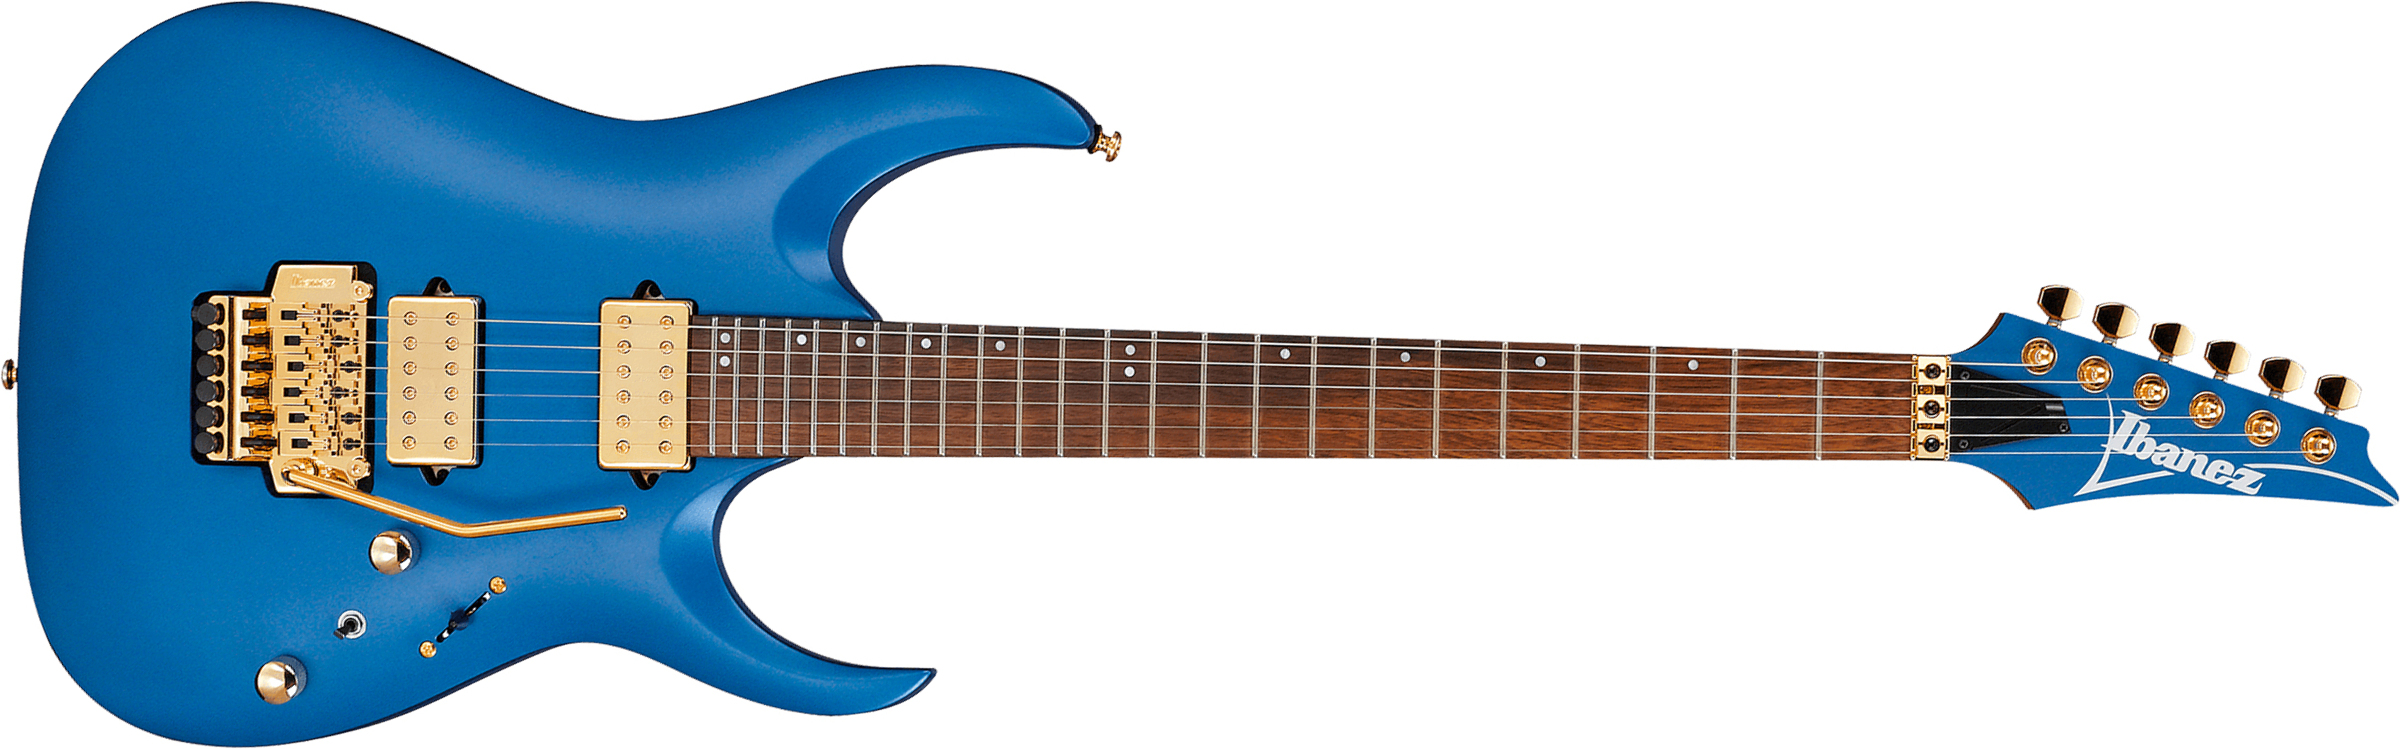 Ibanez Rga42hpt Lbm Standard  Hh Fr Jat - Laser Blue Matte - Str shape electric guitar - Main picture